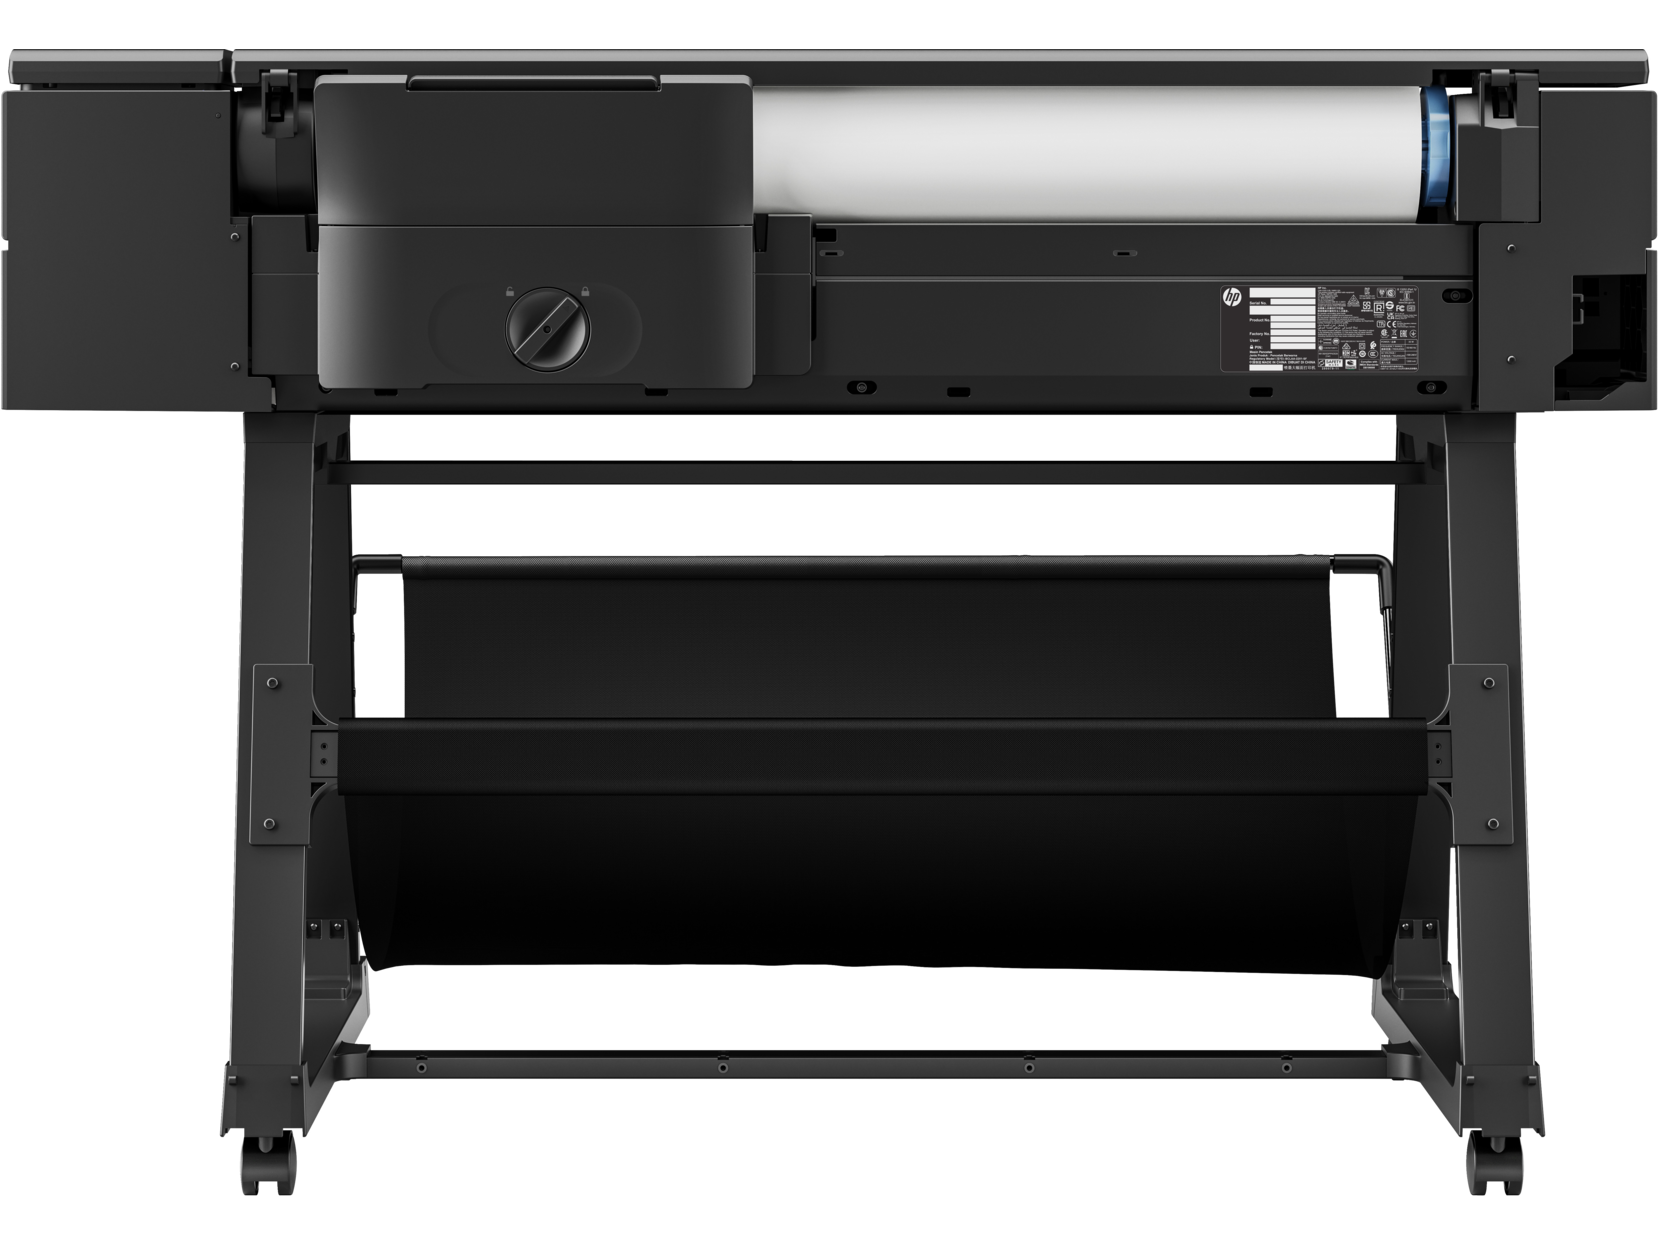 HP DesignJet T850 36-in Multifunction Printer